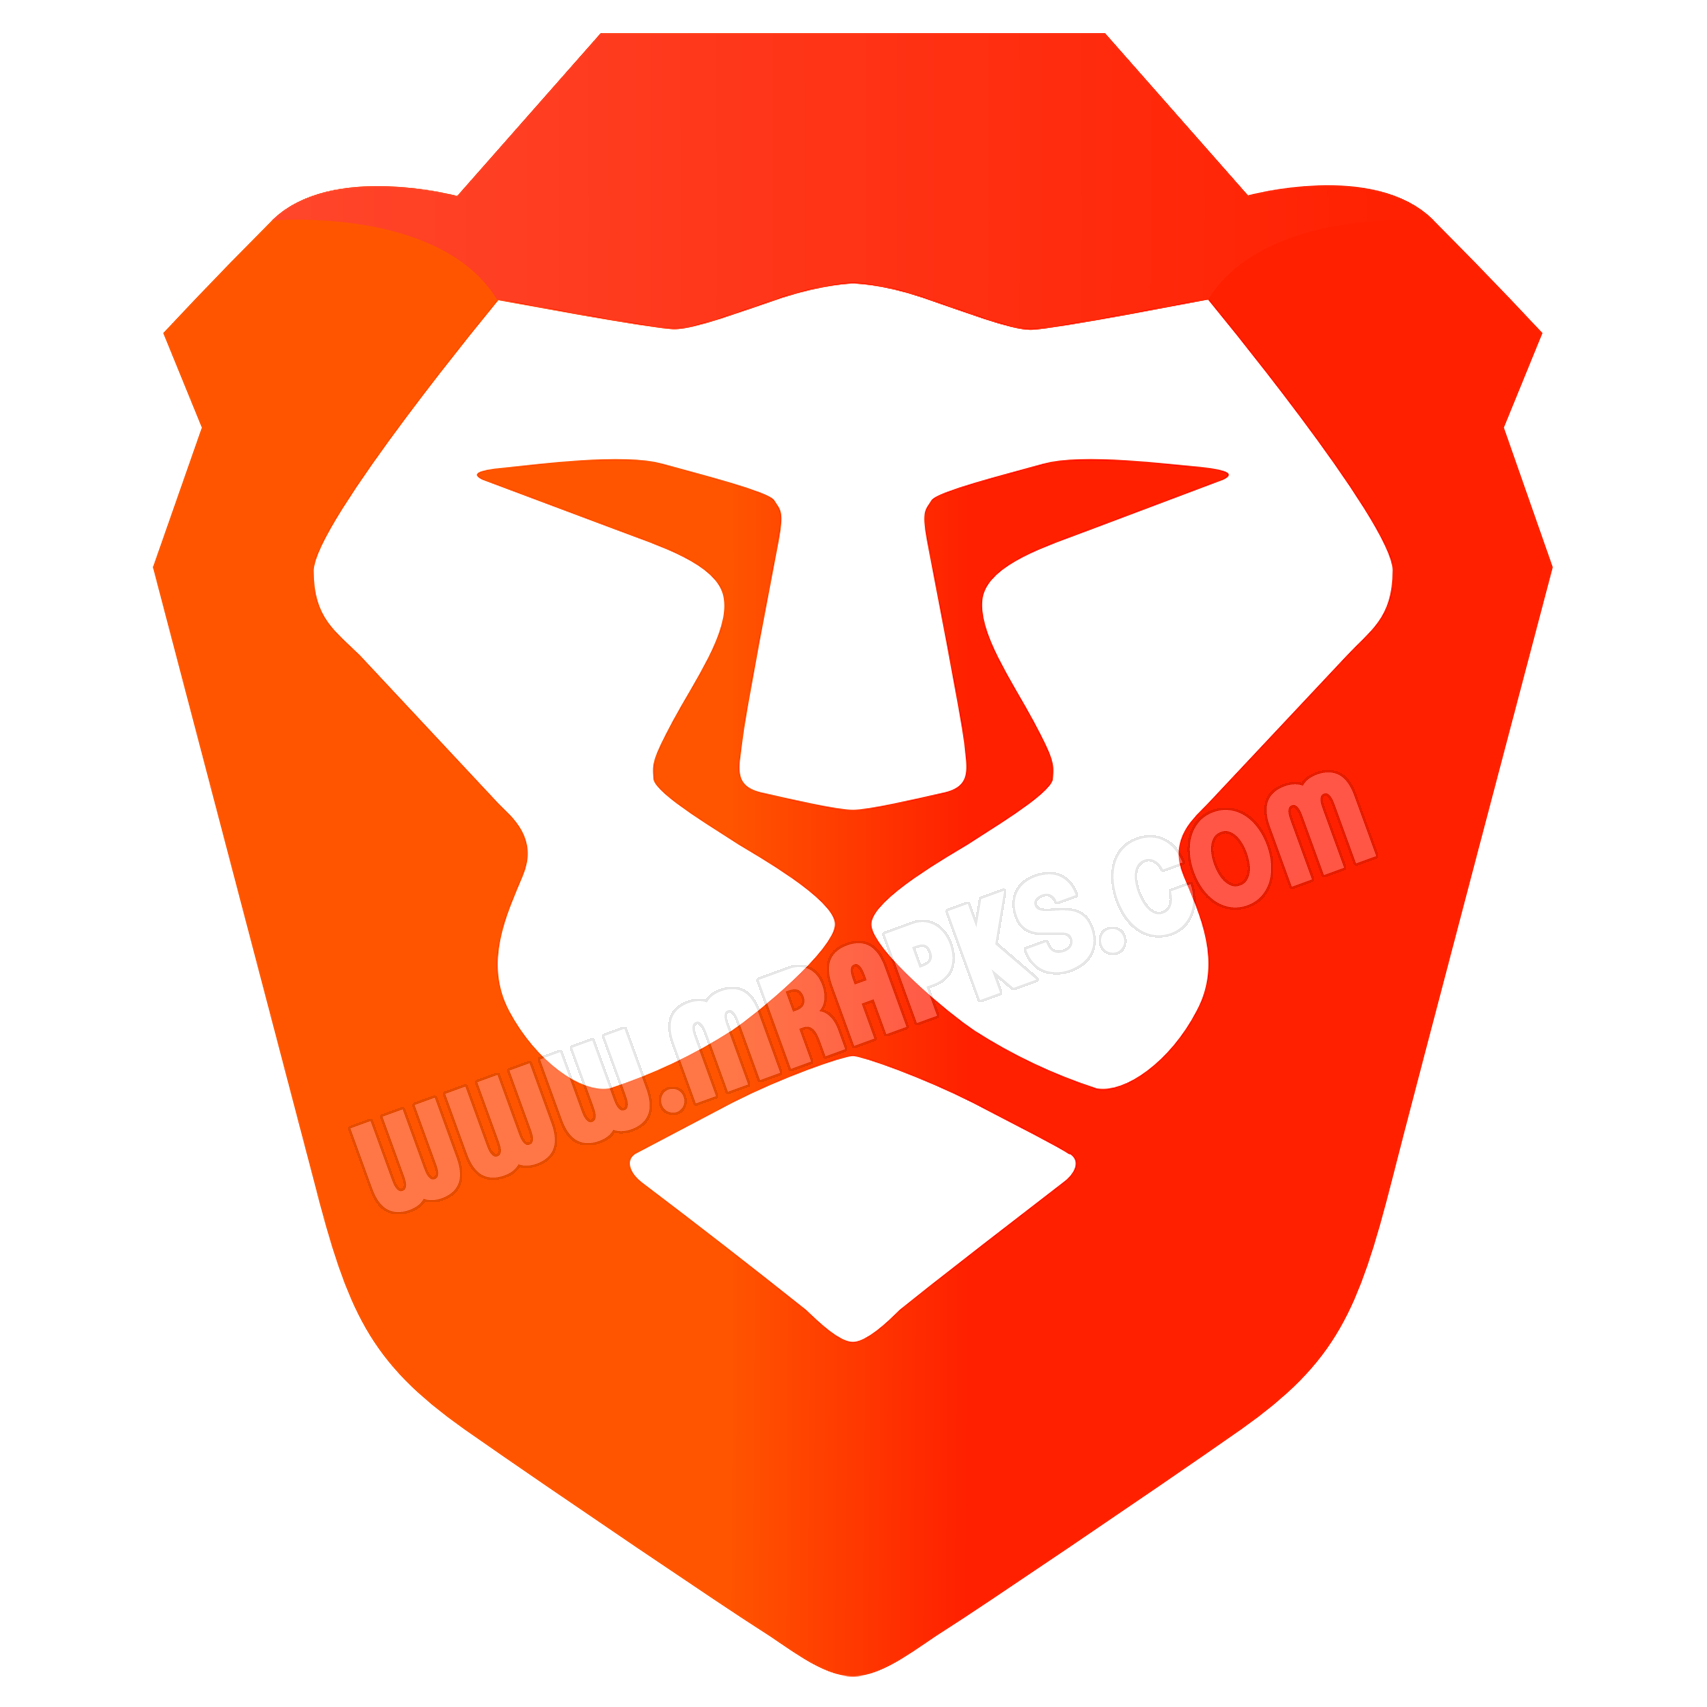 Brave Privacy Browser: Fast, safe, private browser v1.14.86 (Final) APK